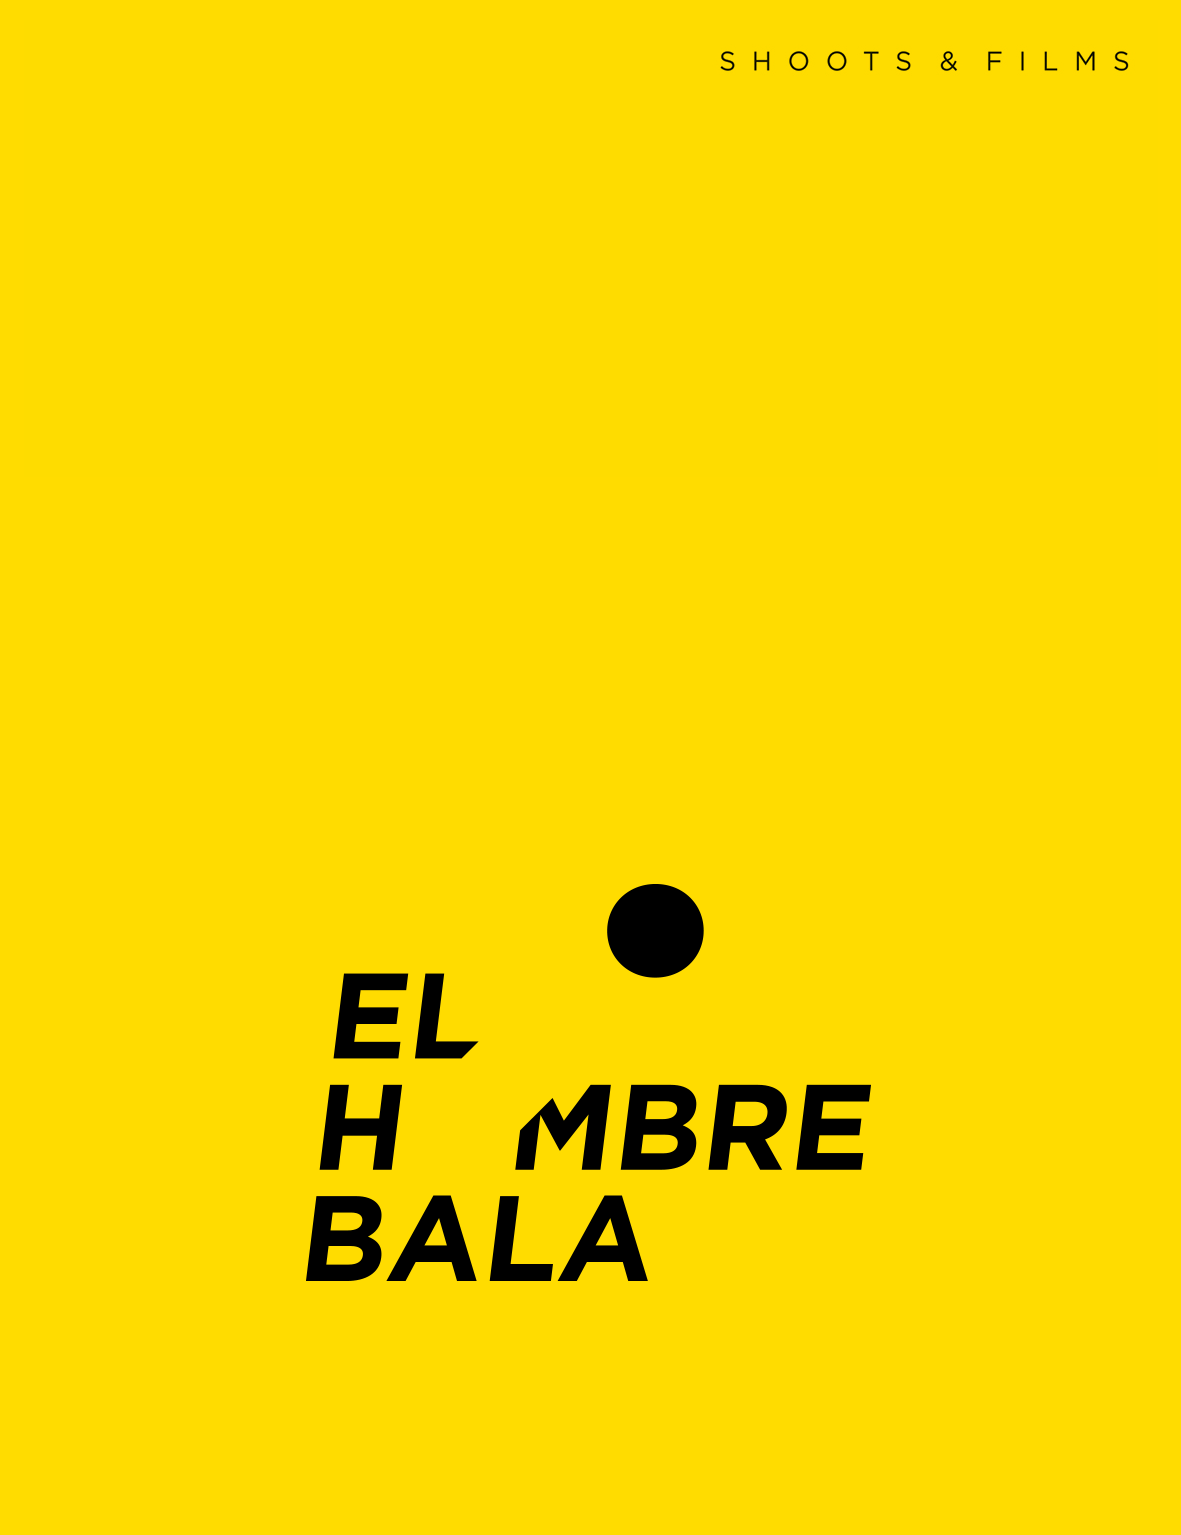 logo_el_hombre_bala_1b_c.png